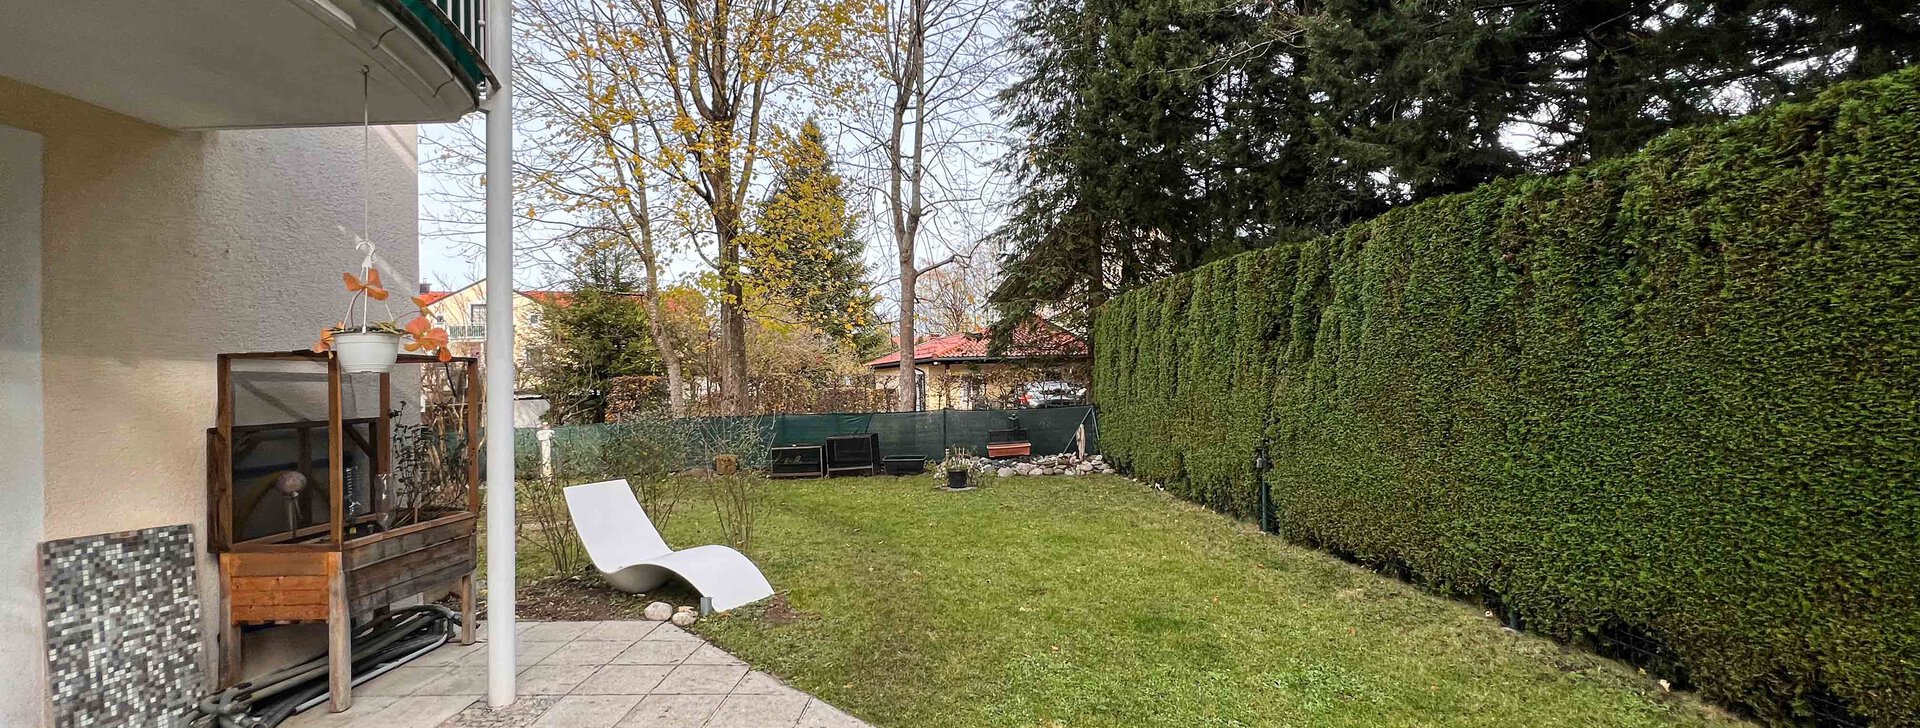 Garten, Gartenwohnung in Grabenstätt, Immobilie kaufen, Nähe Chiemsee | © HausBauHaus GmbH 